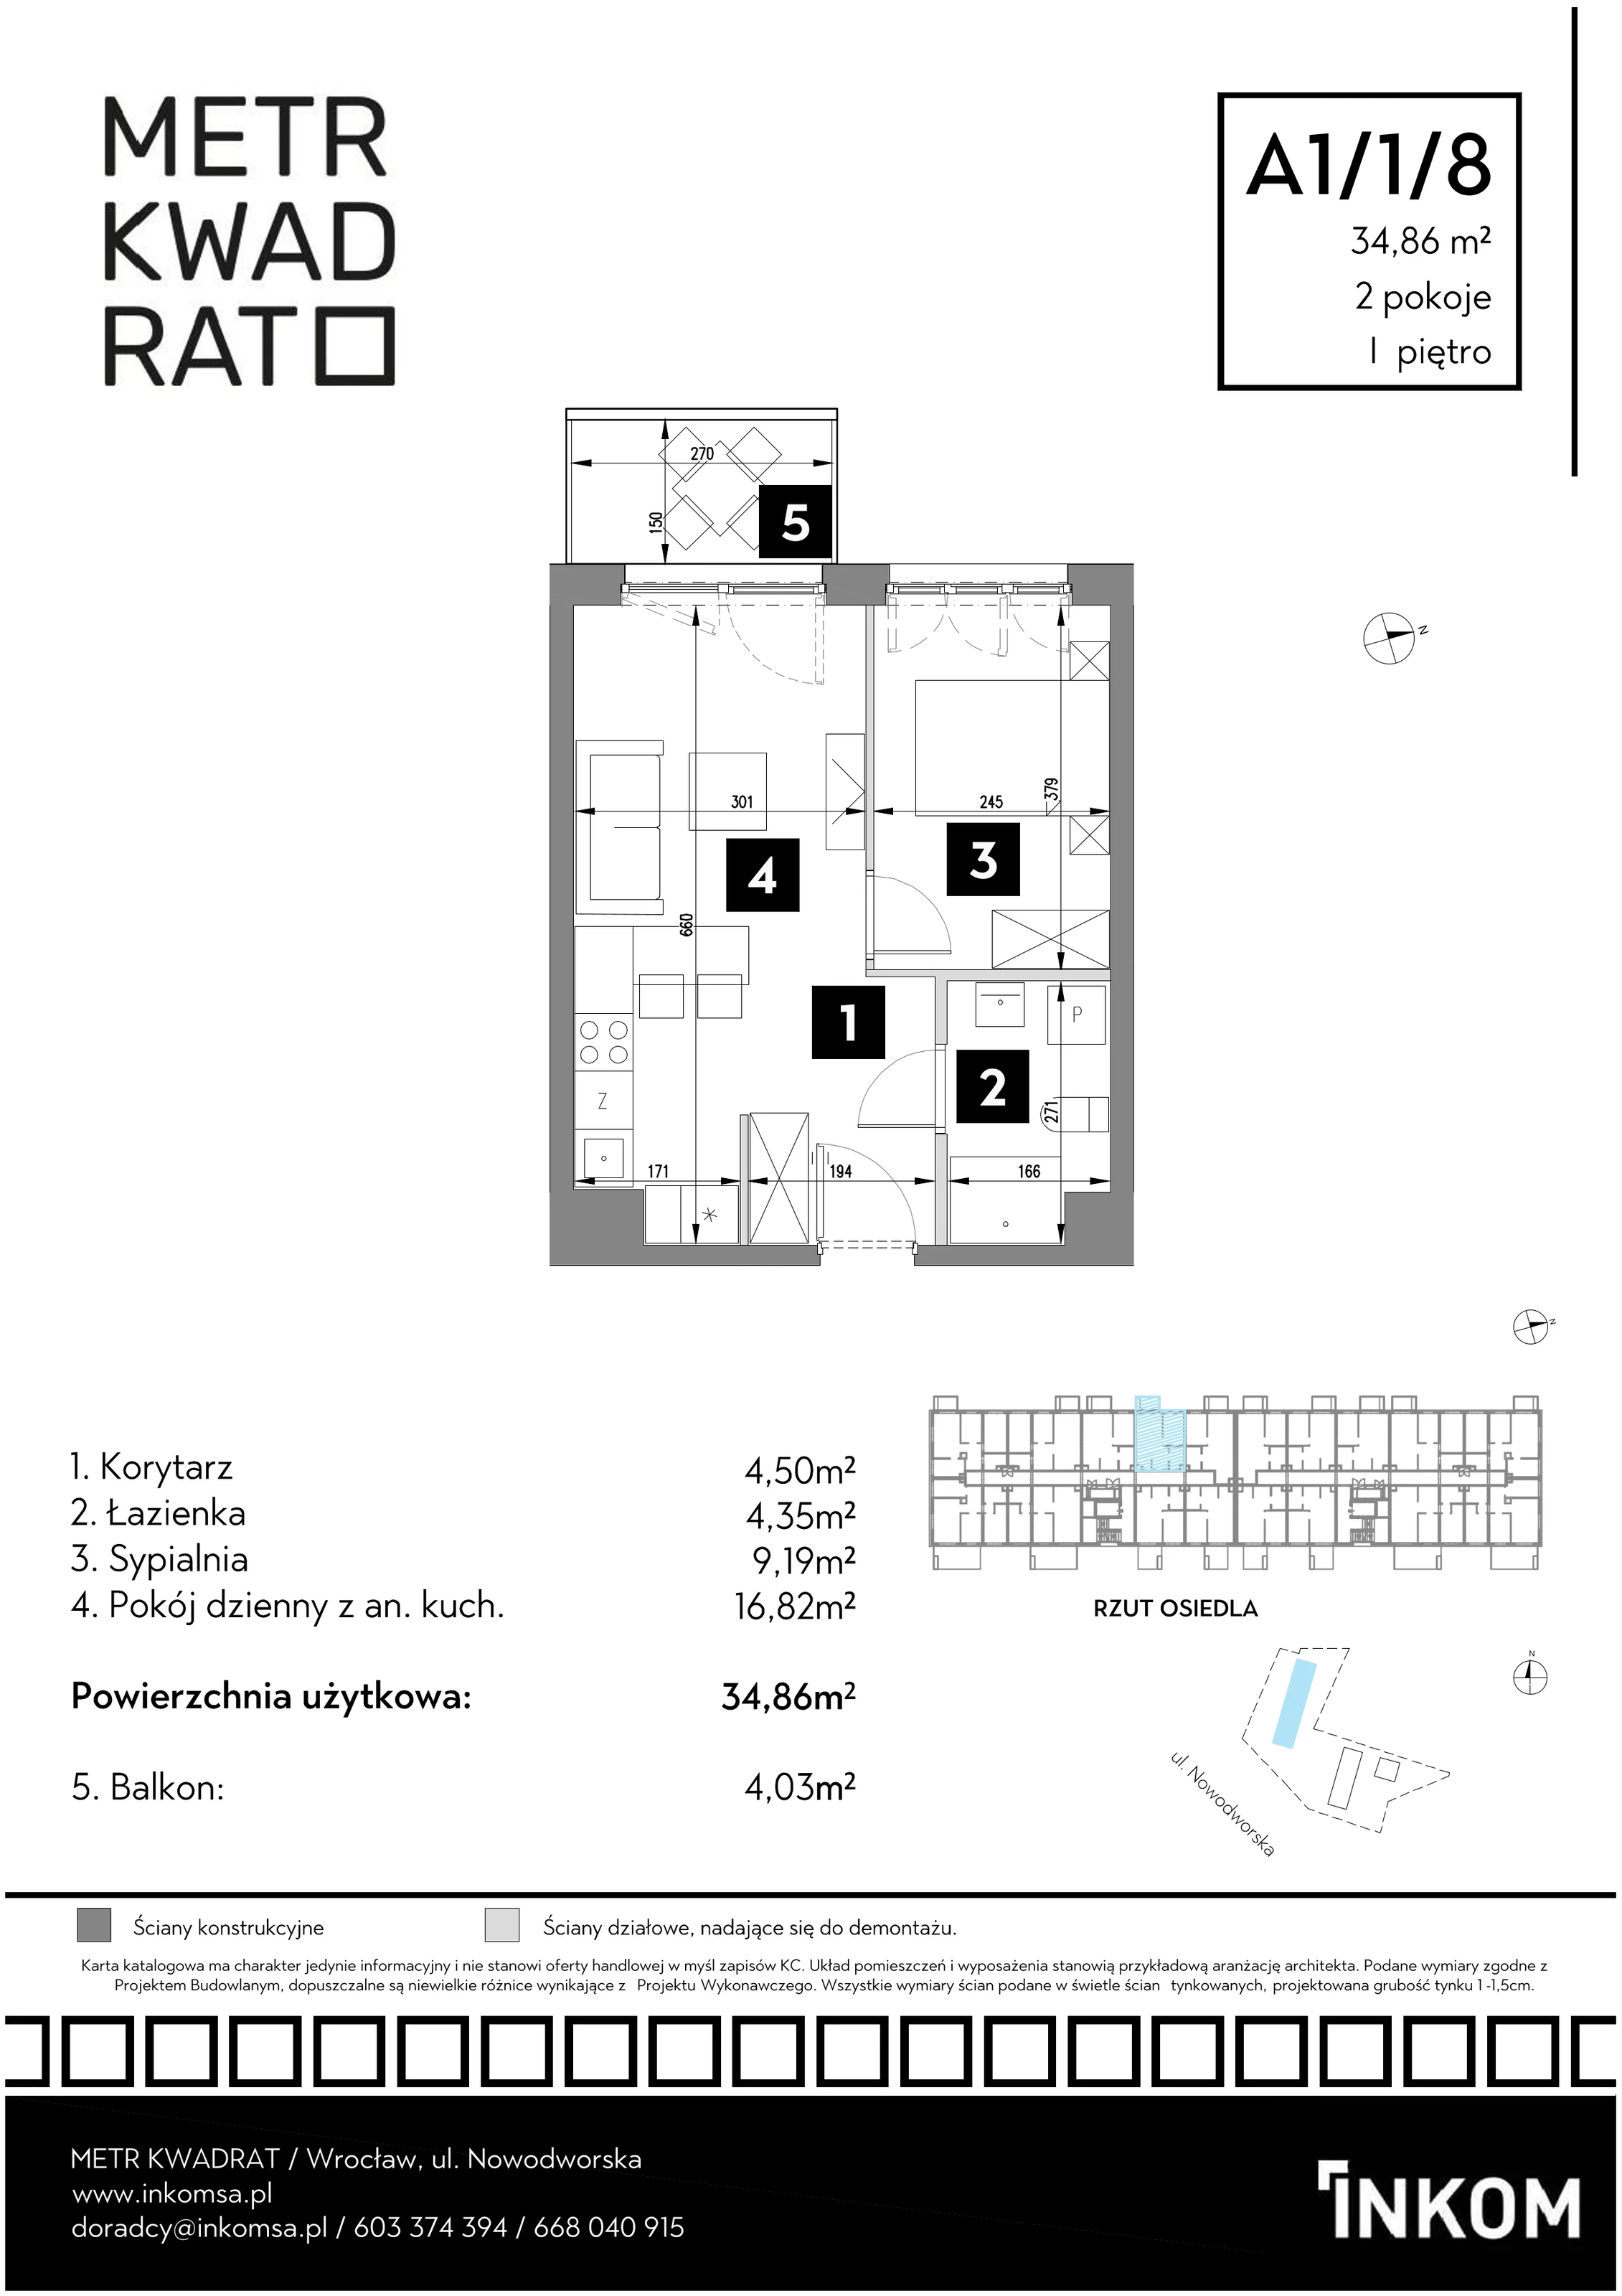 Mieszkanie 34,86 m², piętro 1, oferta nr A1/1/8, Metr Kwadrat, Wrocław, Nowy Dwór, ul. Nowodworska 17B